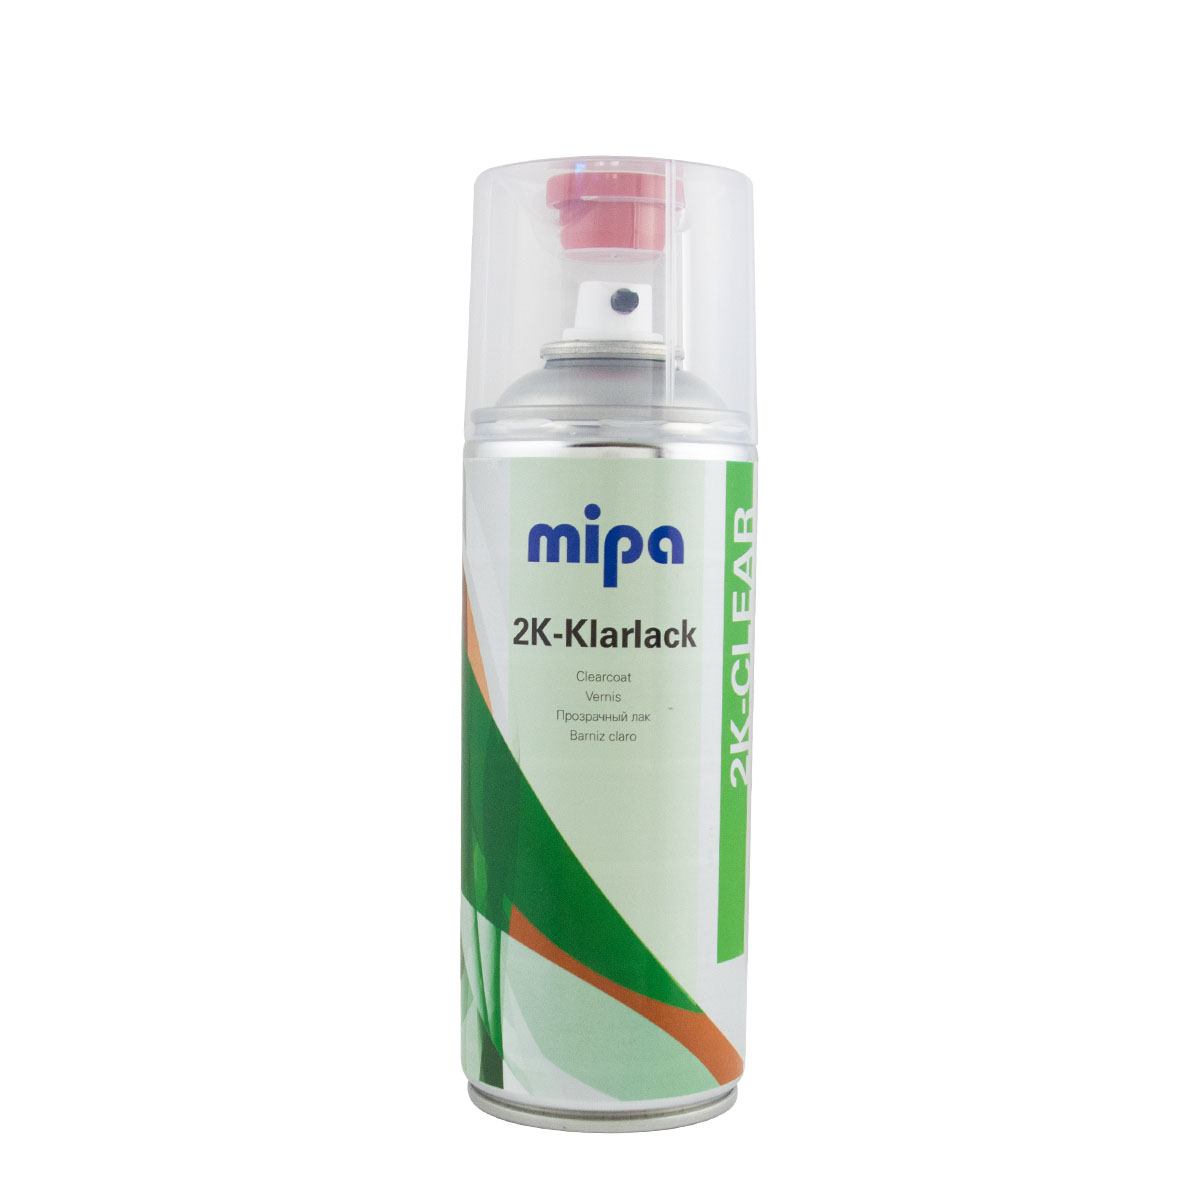 Mipa 2K-Klarlack Spray 400ml hochglänzend, inkl. Härter